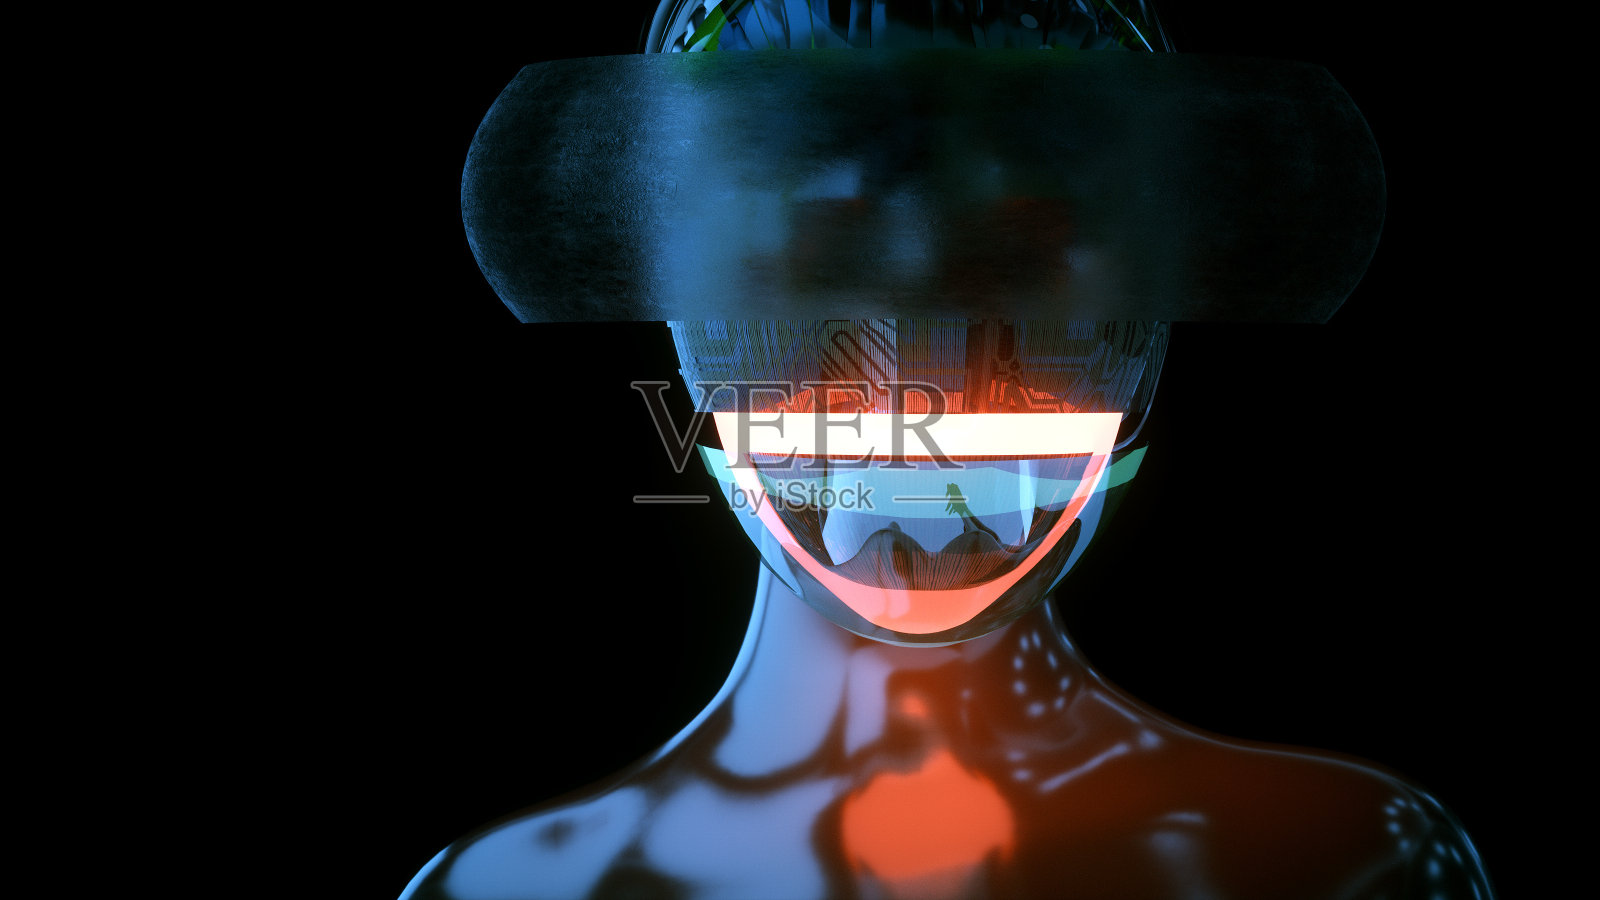 佩戴VR头盔的女性半机械人插画图片素材